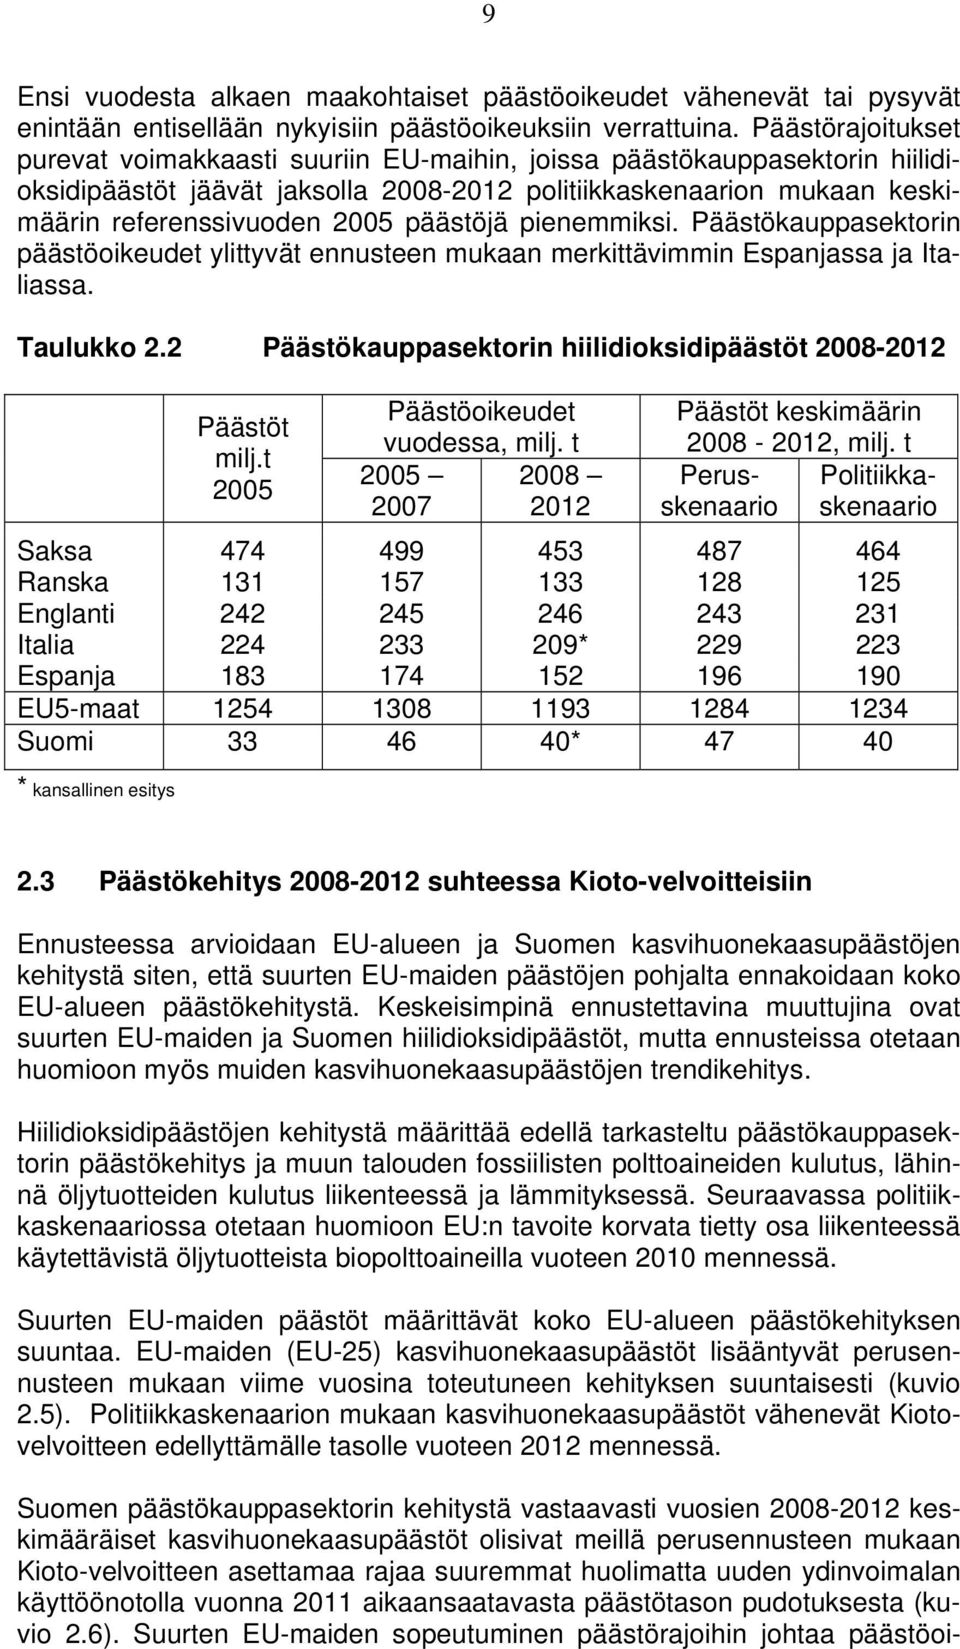 Päästörajoitukset purevat voimakkaasti suuriin EU-maihin, joissa päästökauppasektorin hiilidioksidipäästöt jäävät jaksolla 2008-2012 politiikkaskenaarion mukaan keskimäärin referenssivuoden 2005